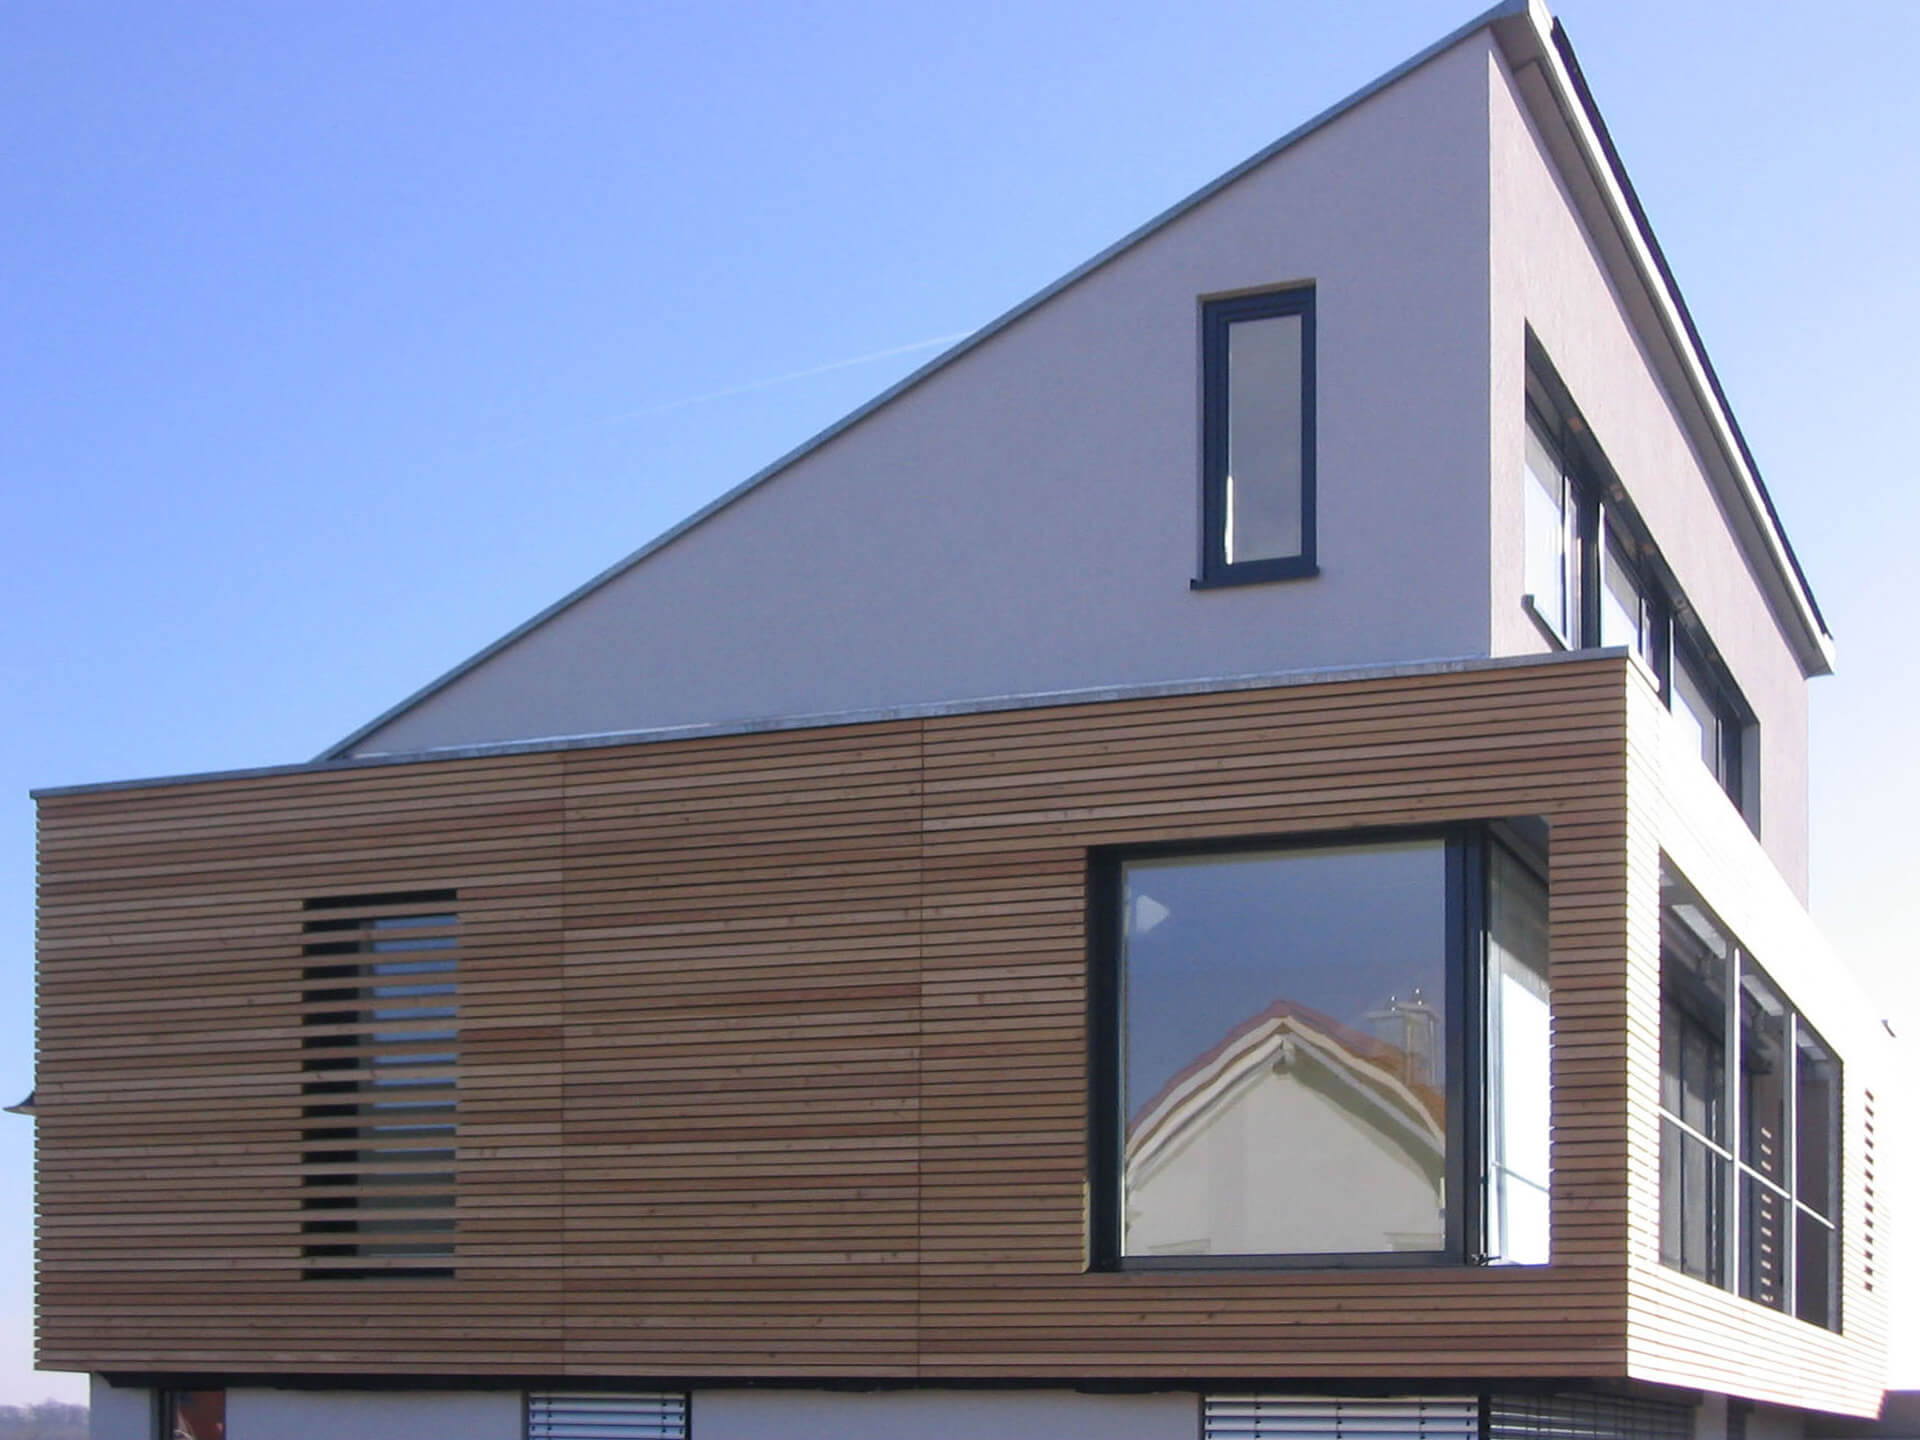 Holz-Alu-Fenster <br>Wertig und formschön